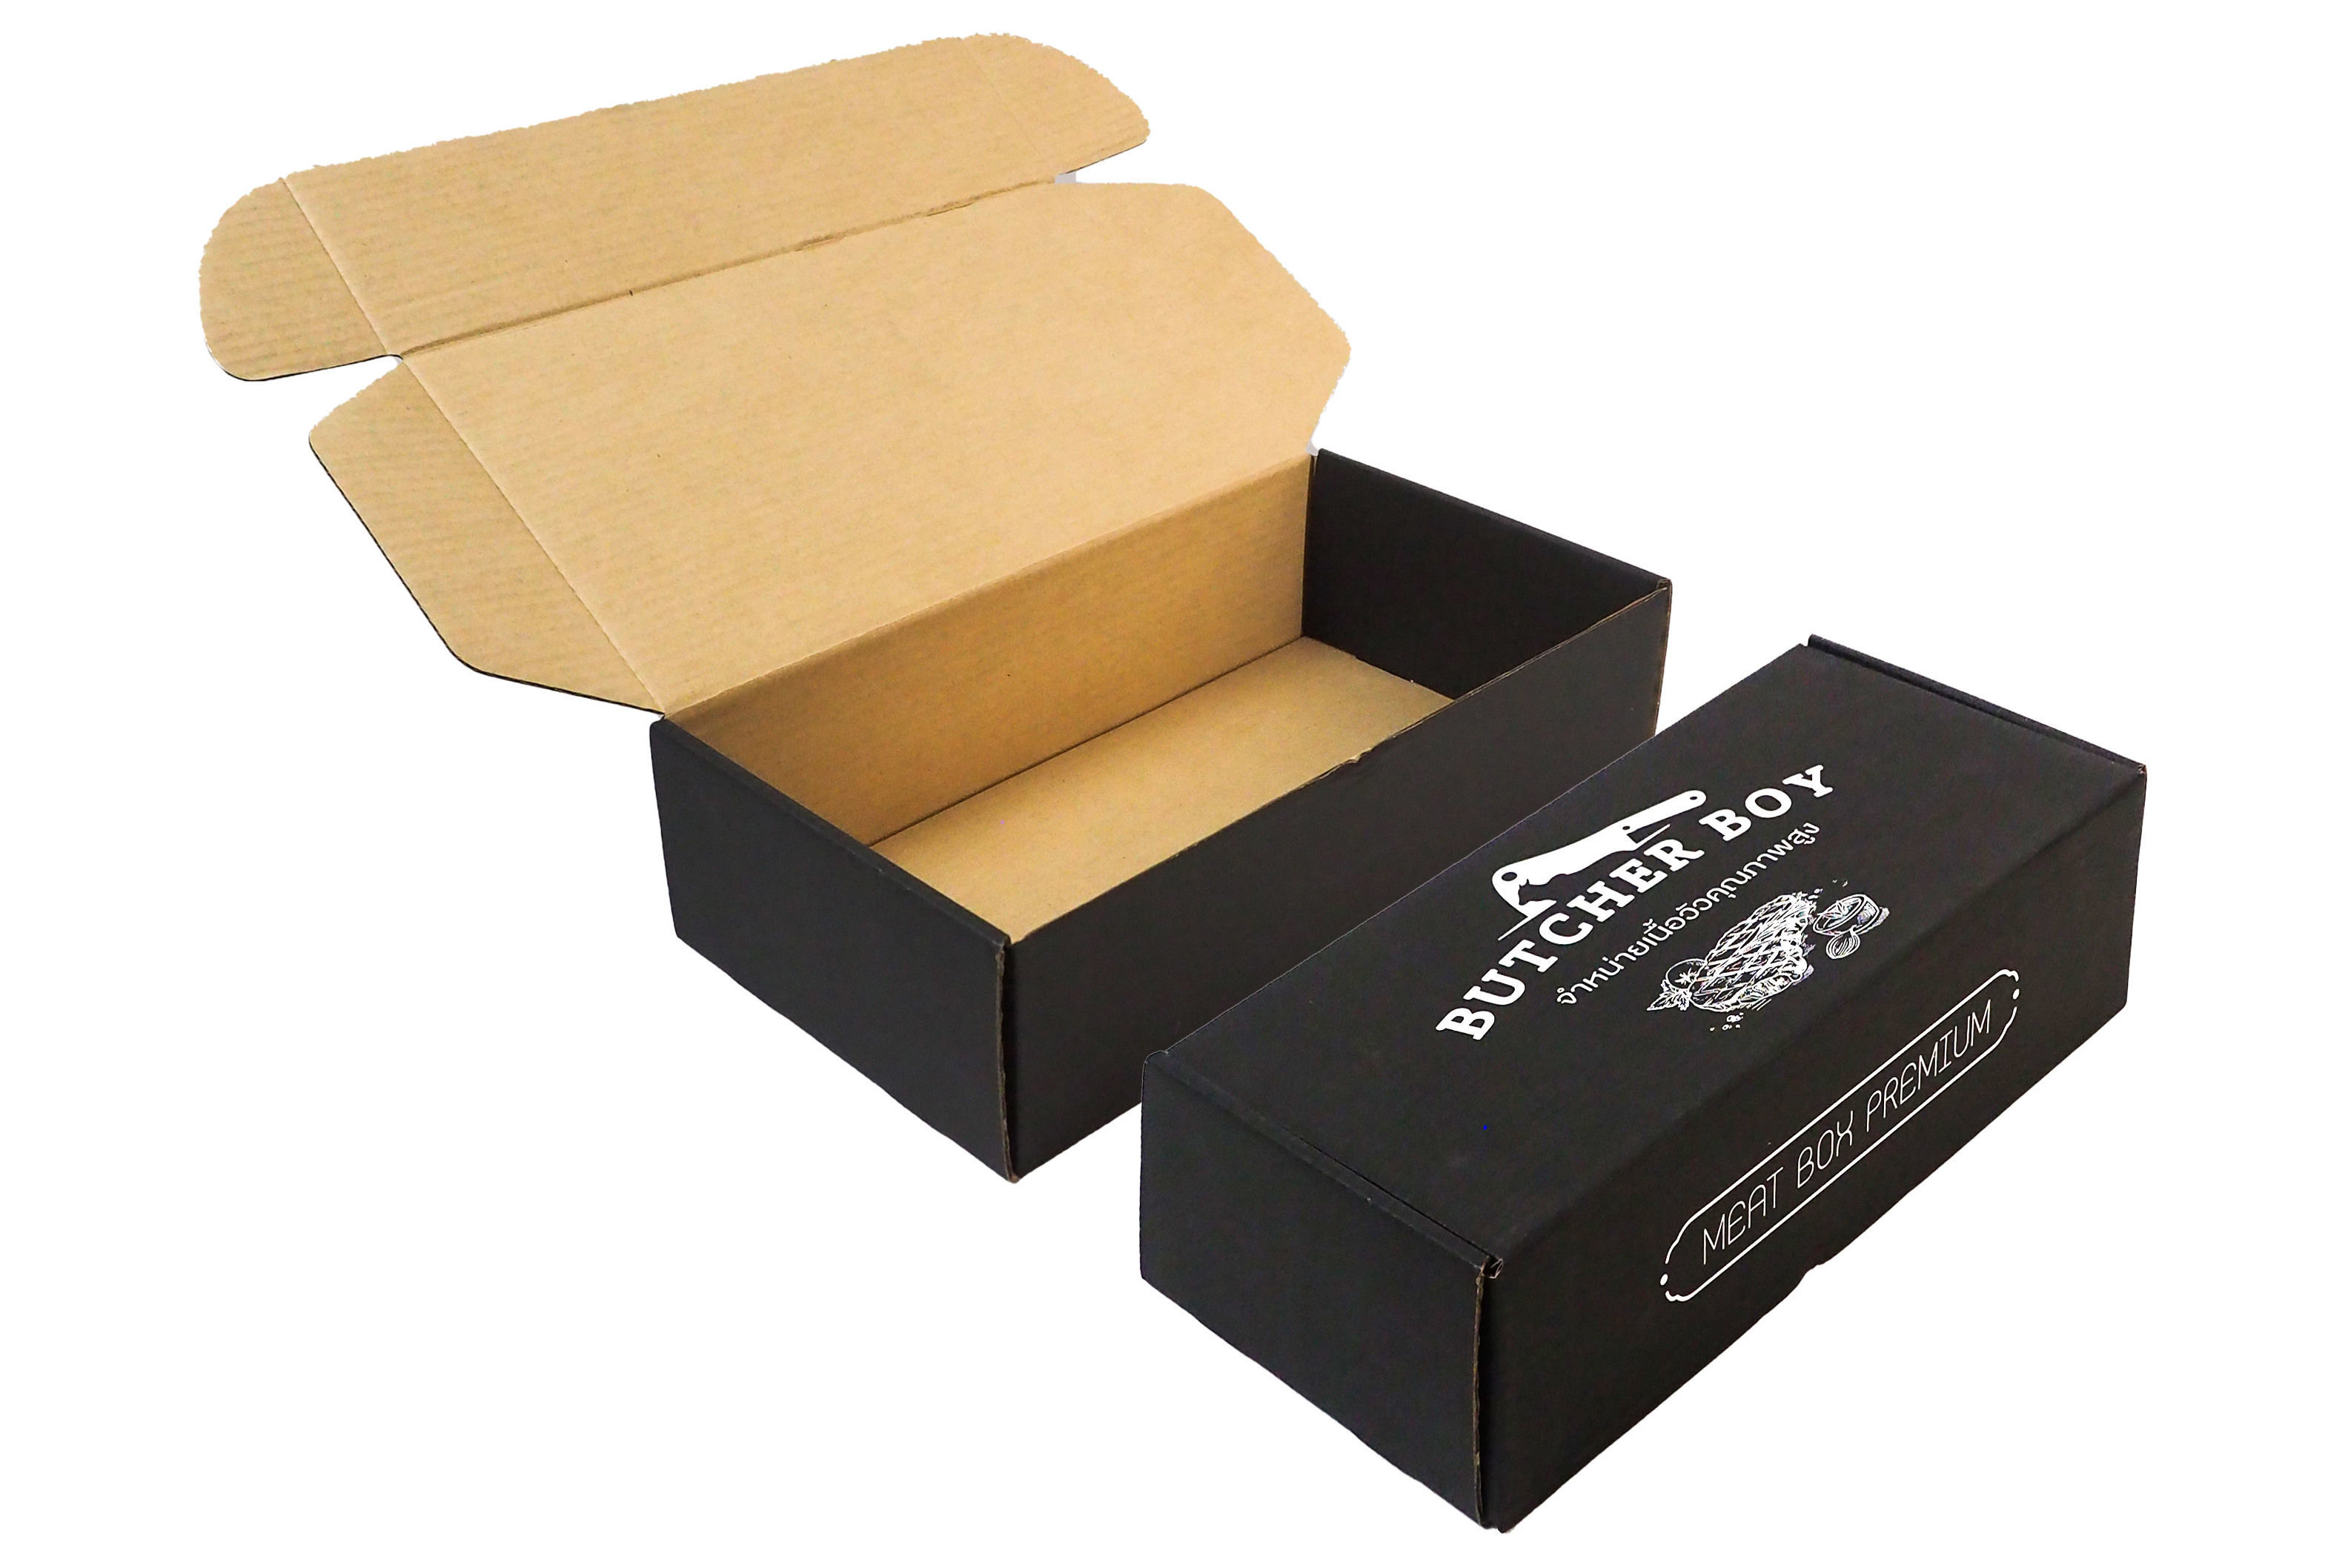 กล่องหูหิ้ว ด้านนอกกระดาษสีขาวย้อมสีดำ โลดกและข้อความเป็นสีของกระดาษ ทำให้ตัวกล่องมีความโดดเด่น เห็นได้ชัดเจน สะดุดตา มีความ Premium 